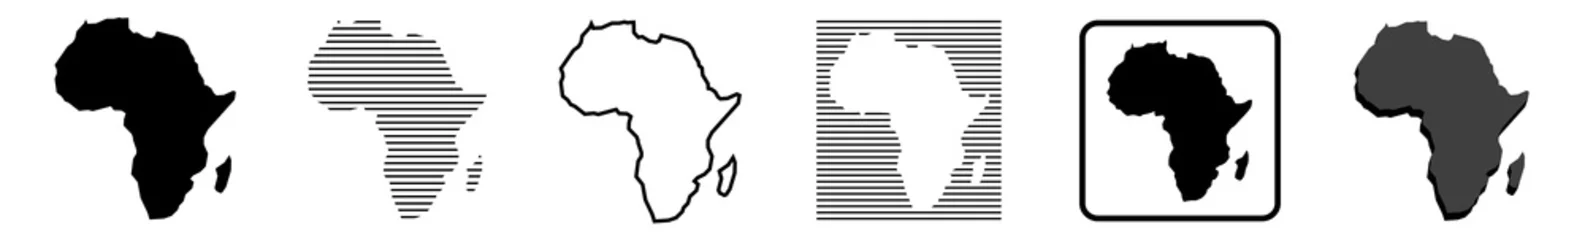 Foto op Plexiglas Afrika kaart   Afrikaanse grens   werelddeel   variaties © endstern